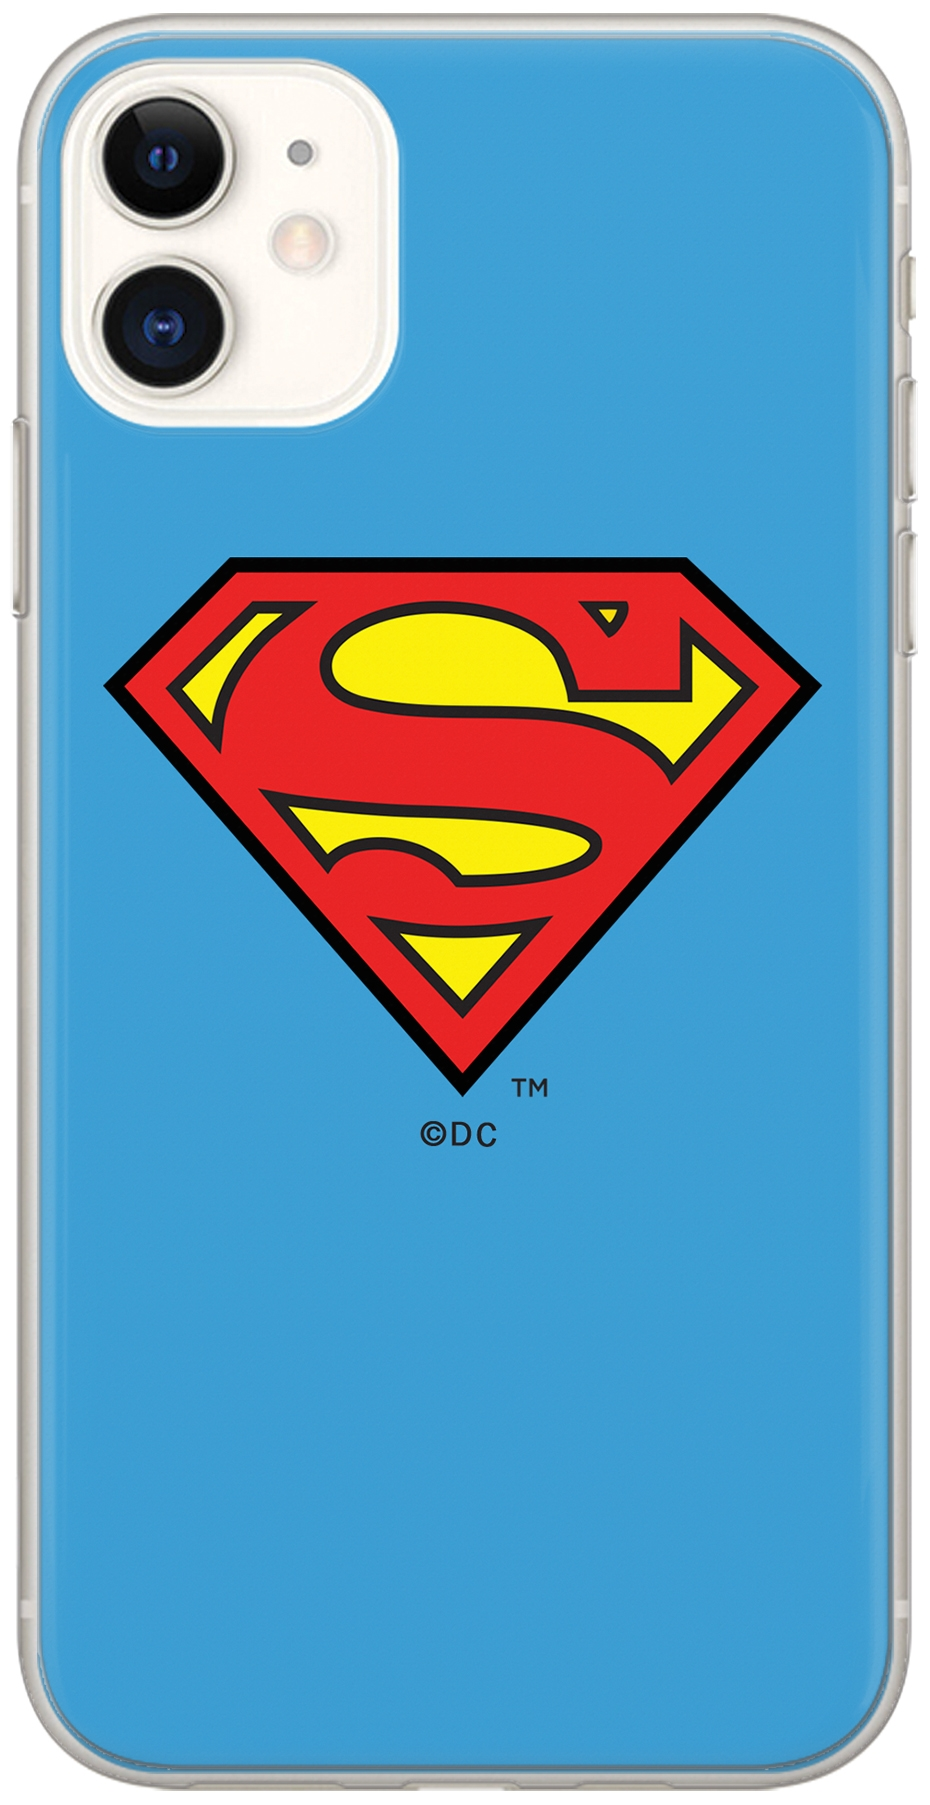 Lizenzhülle Handyhülle für Huawei Y5 2017/ Y6 2017 Hülle mit Motiv Superman 002